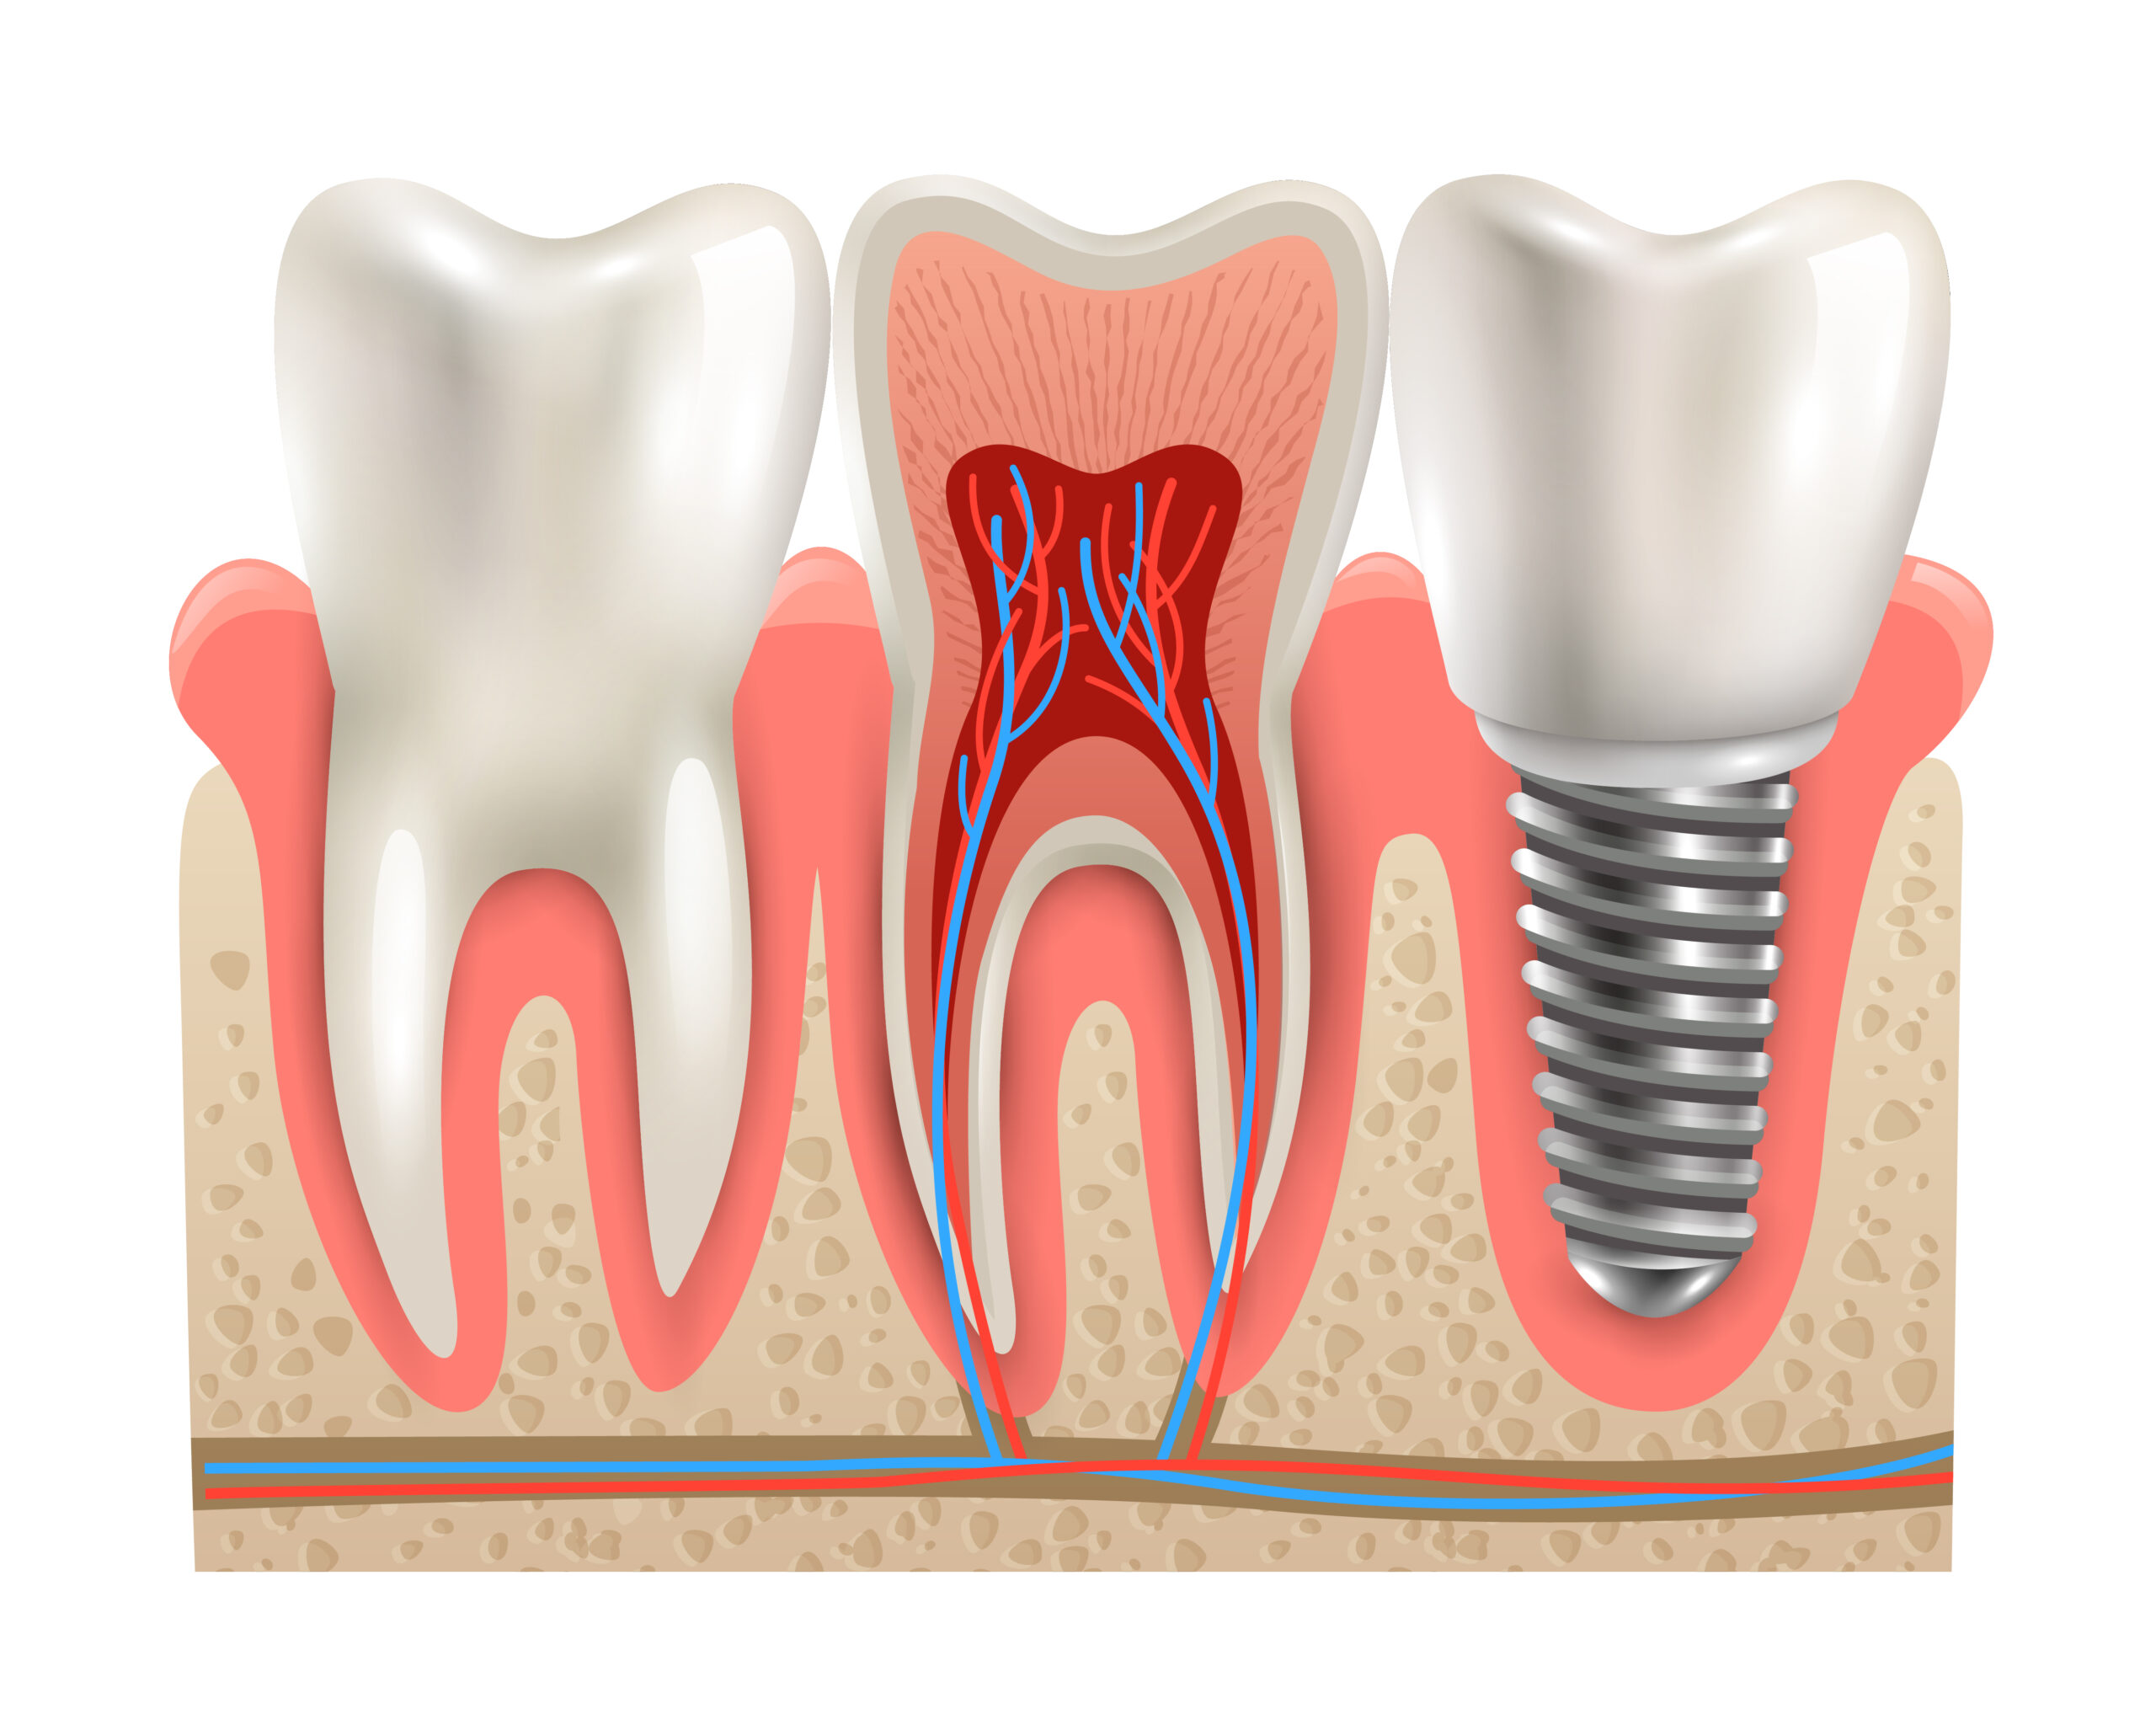 Benefícios do implante dentário: você conhece?